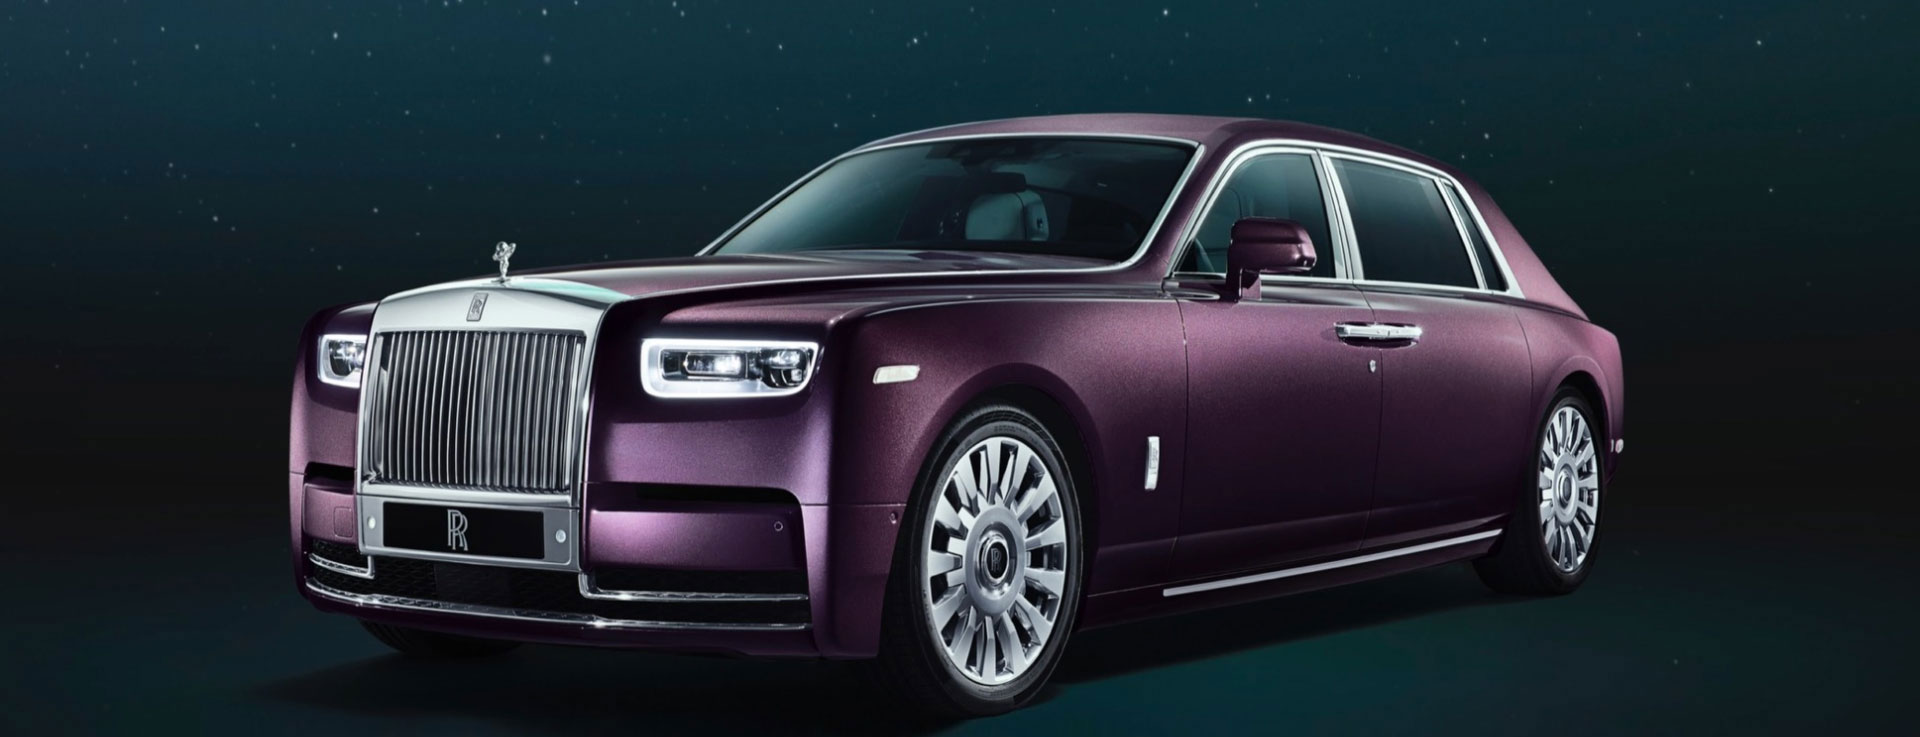 Rolls-Royce Phantom Extended Wheelbase | Miller Motorcars | New ...